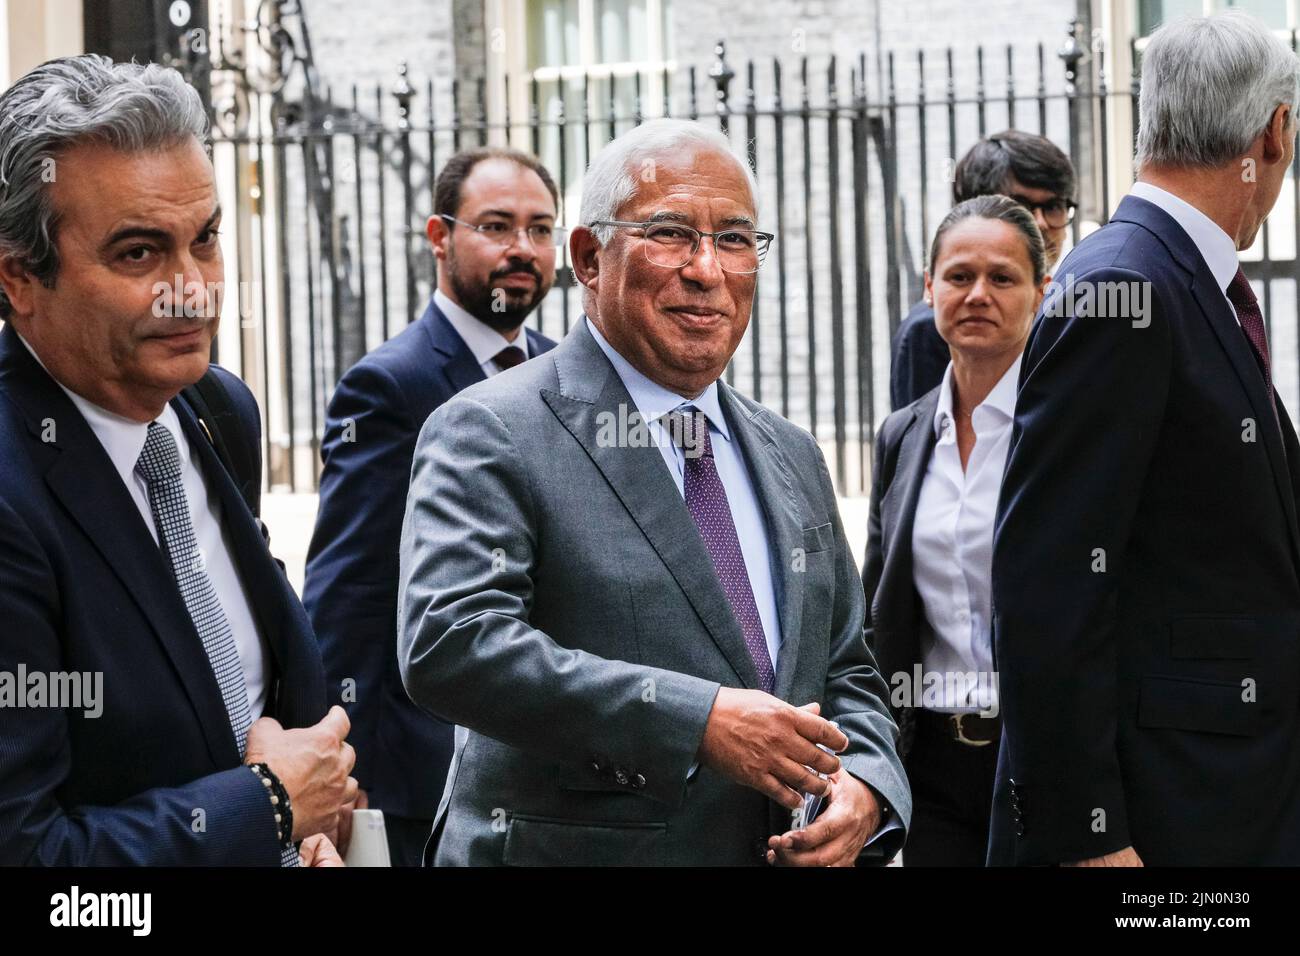 António Costa, Ministerpräsident von Portugal, offizieller Besuch in London, lächelt vor der Kamera Stockfoto